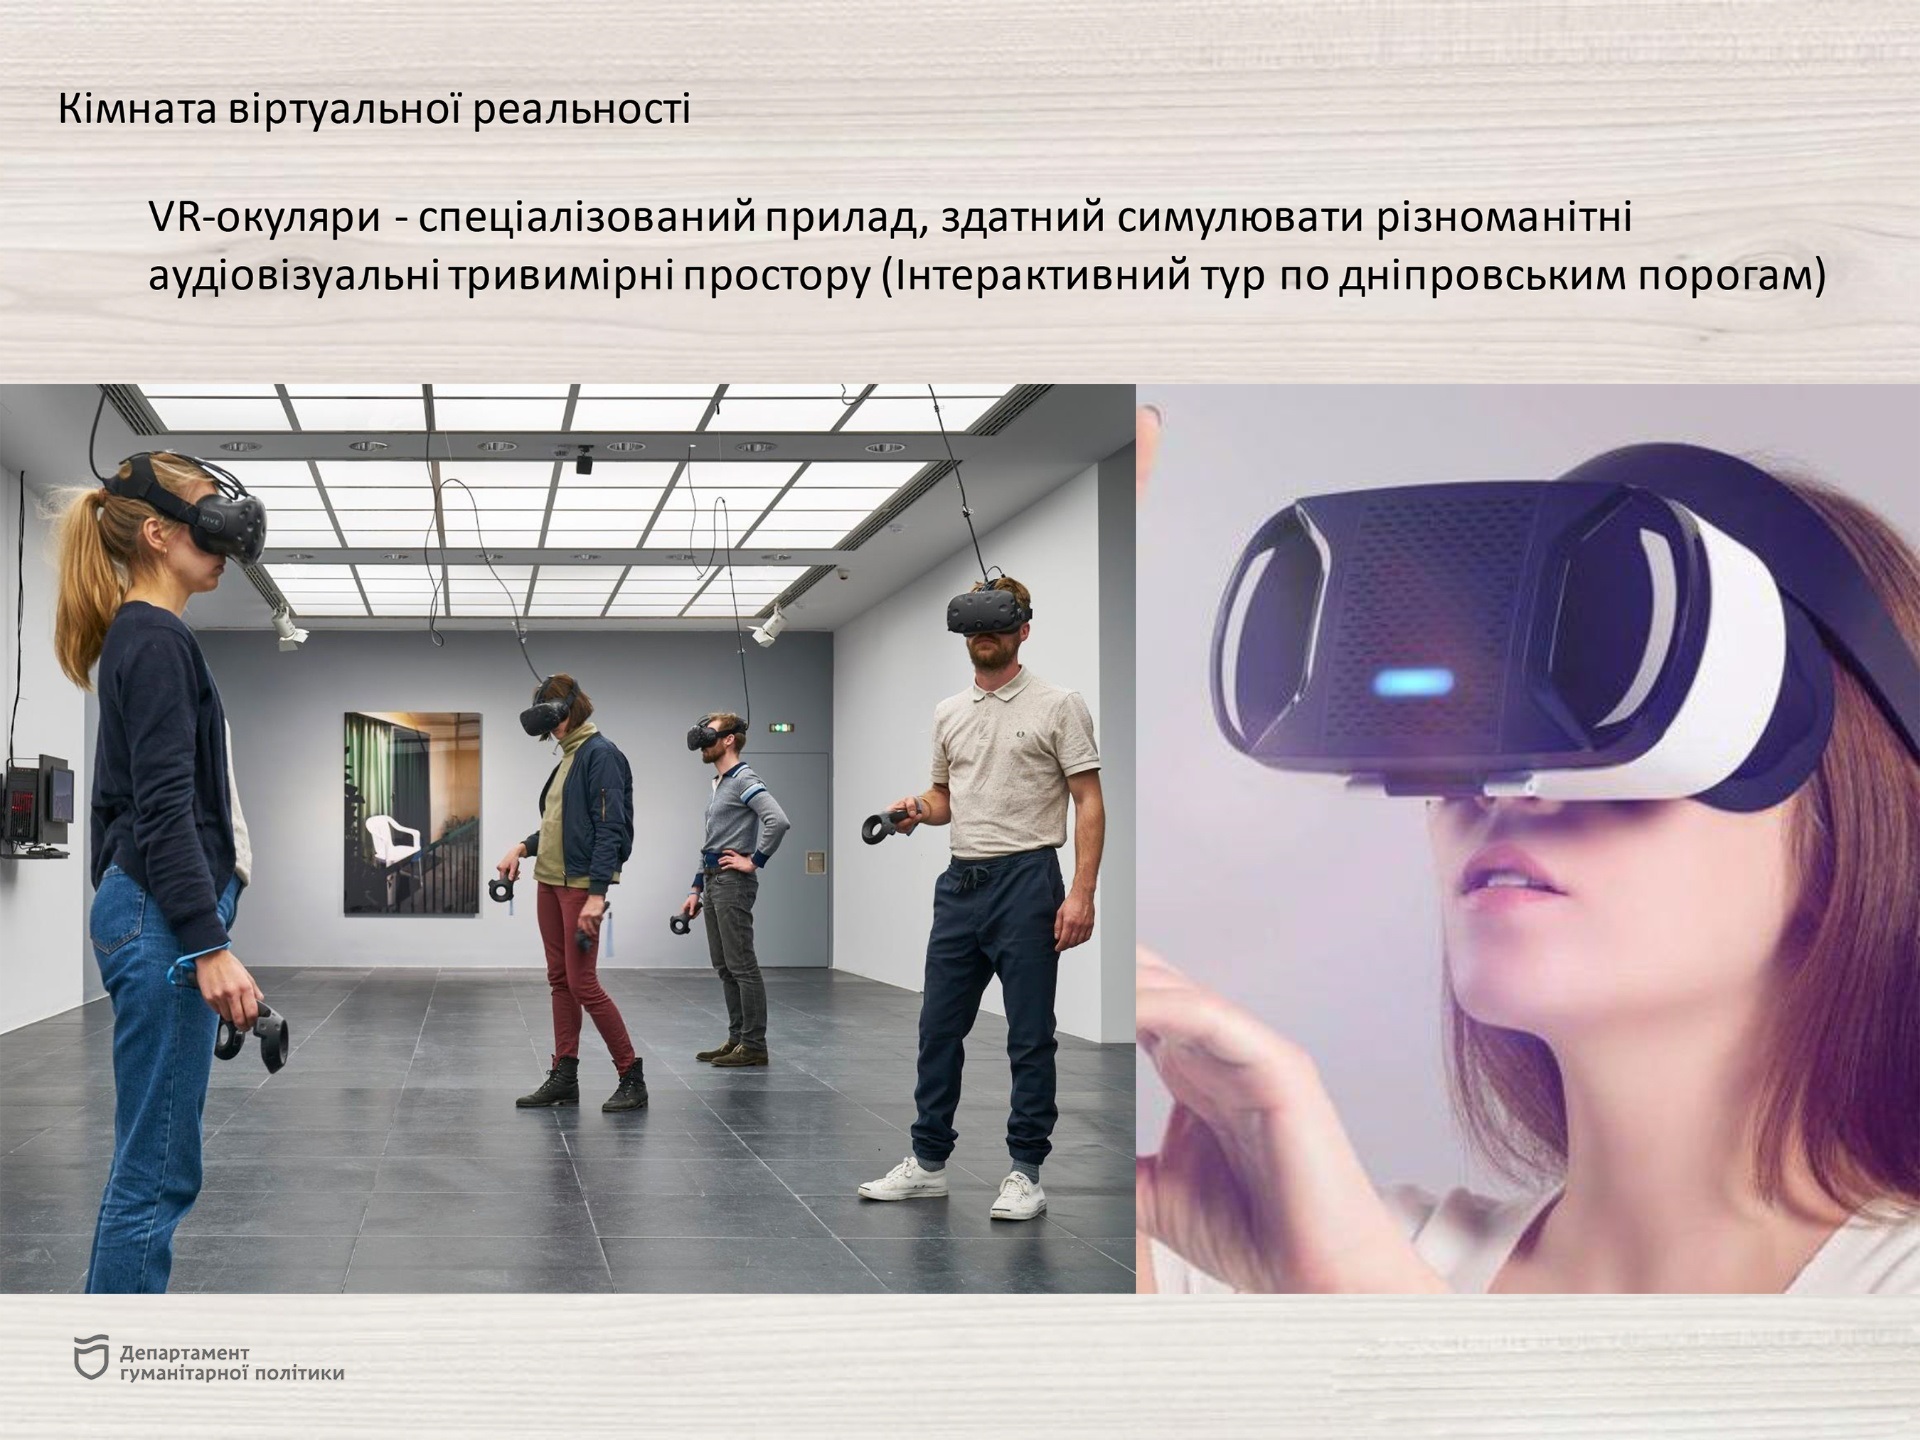 В музее появится комната виртуальной реальности - || фото: dniprorada.gov.ua